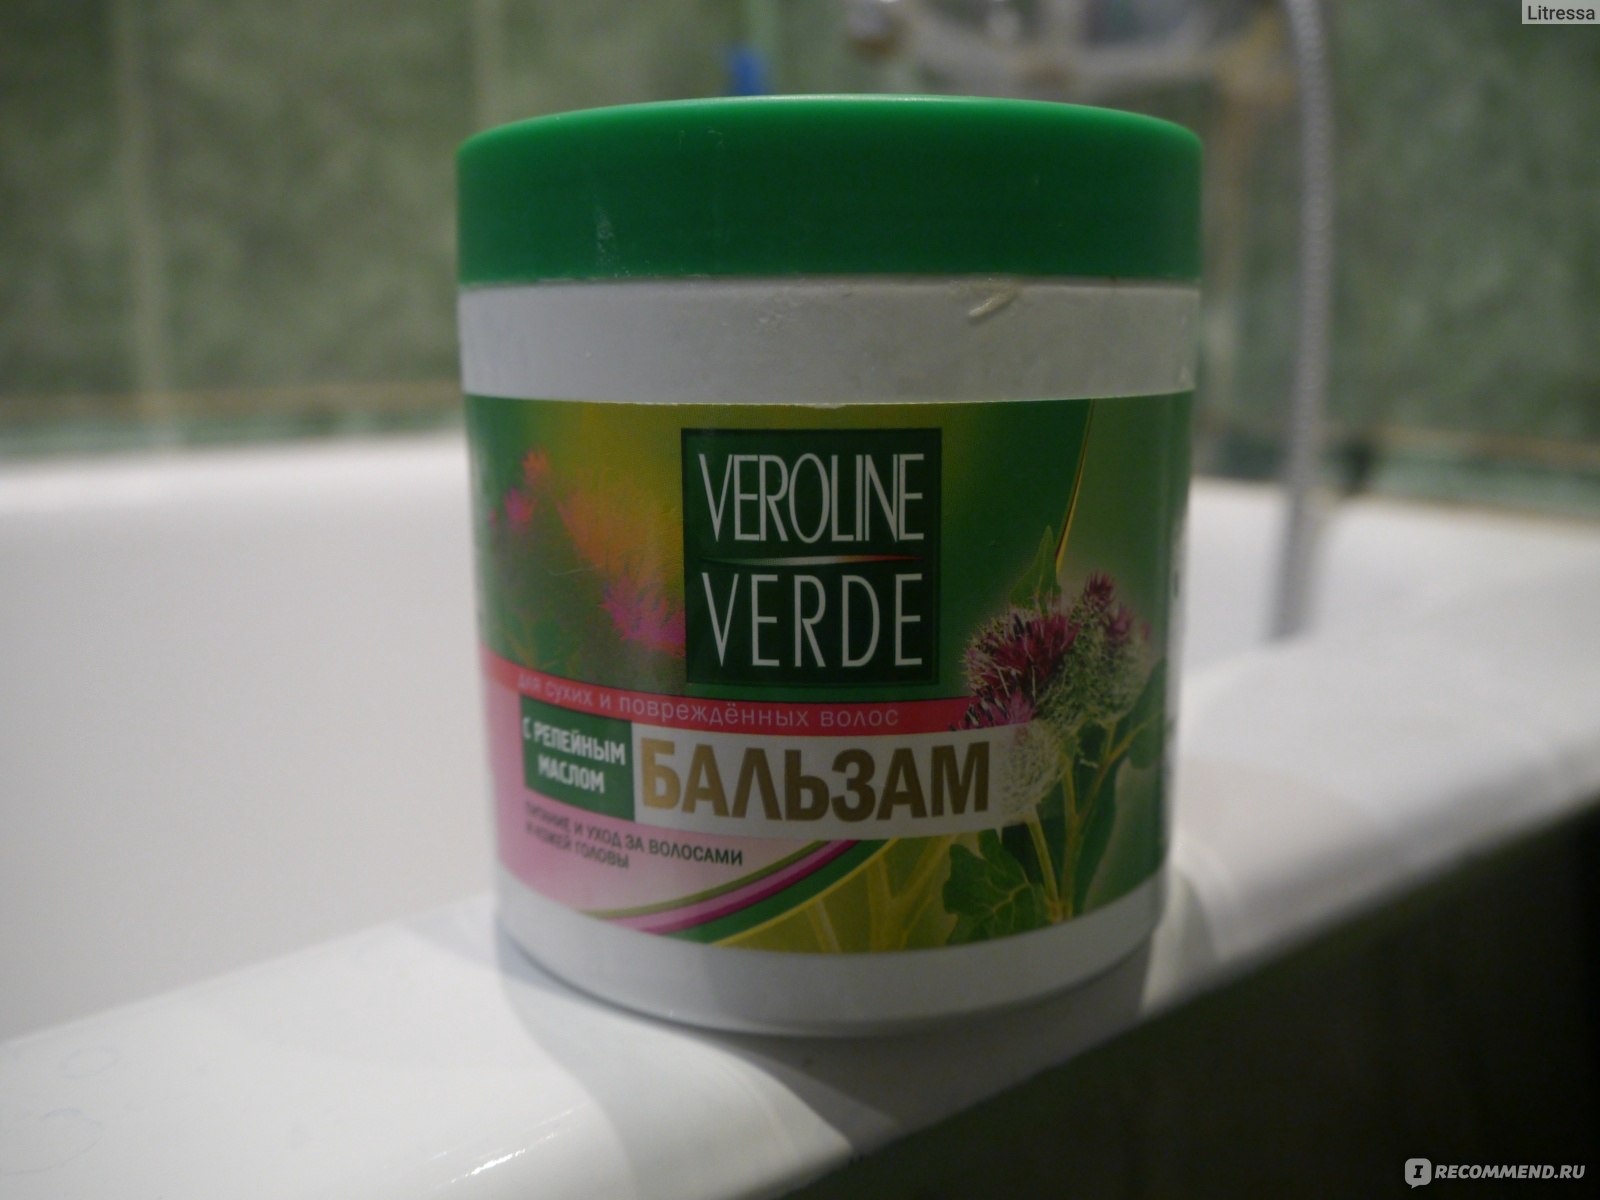 Veroline verde бальзам для волос с репейным маслом